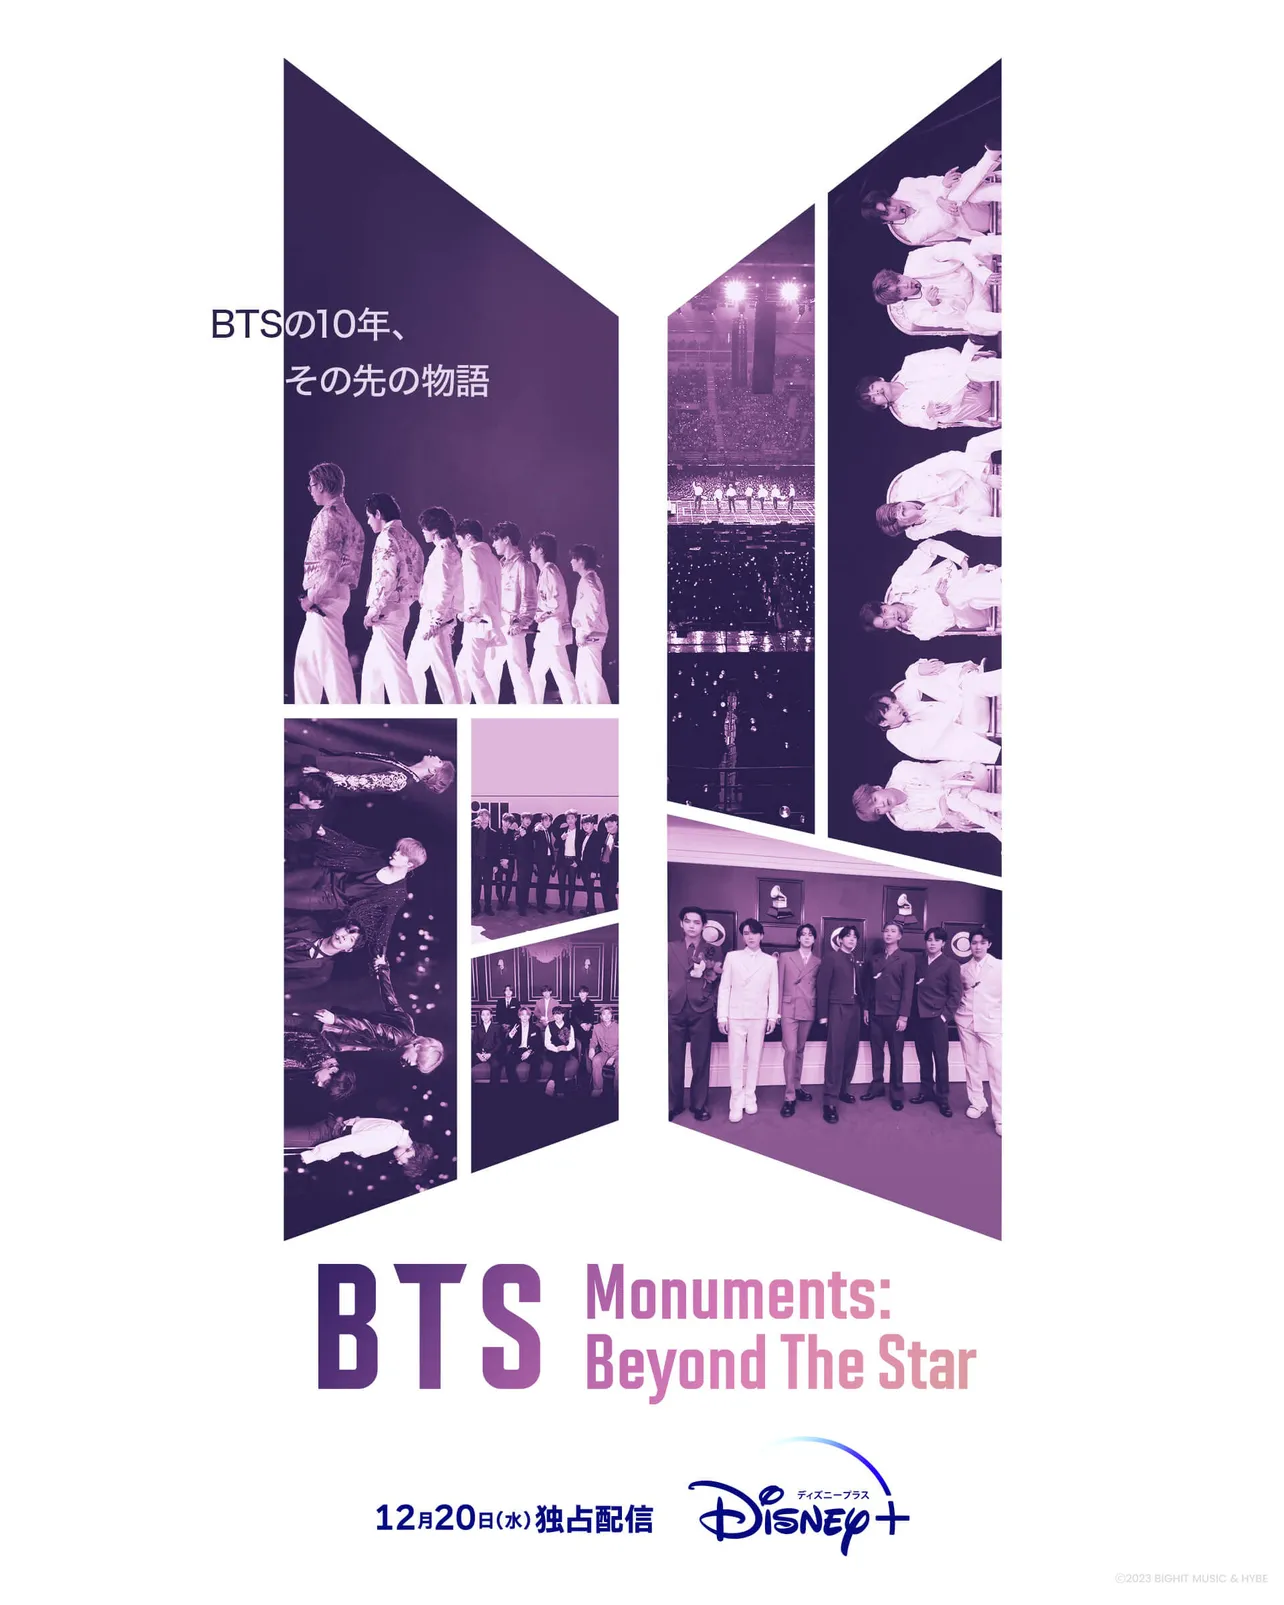 「BTS Monuments: Beyond The Star」ポスタービジュアルが解禁された